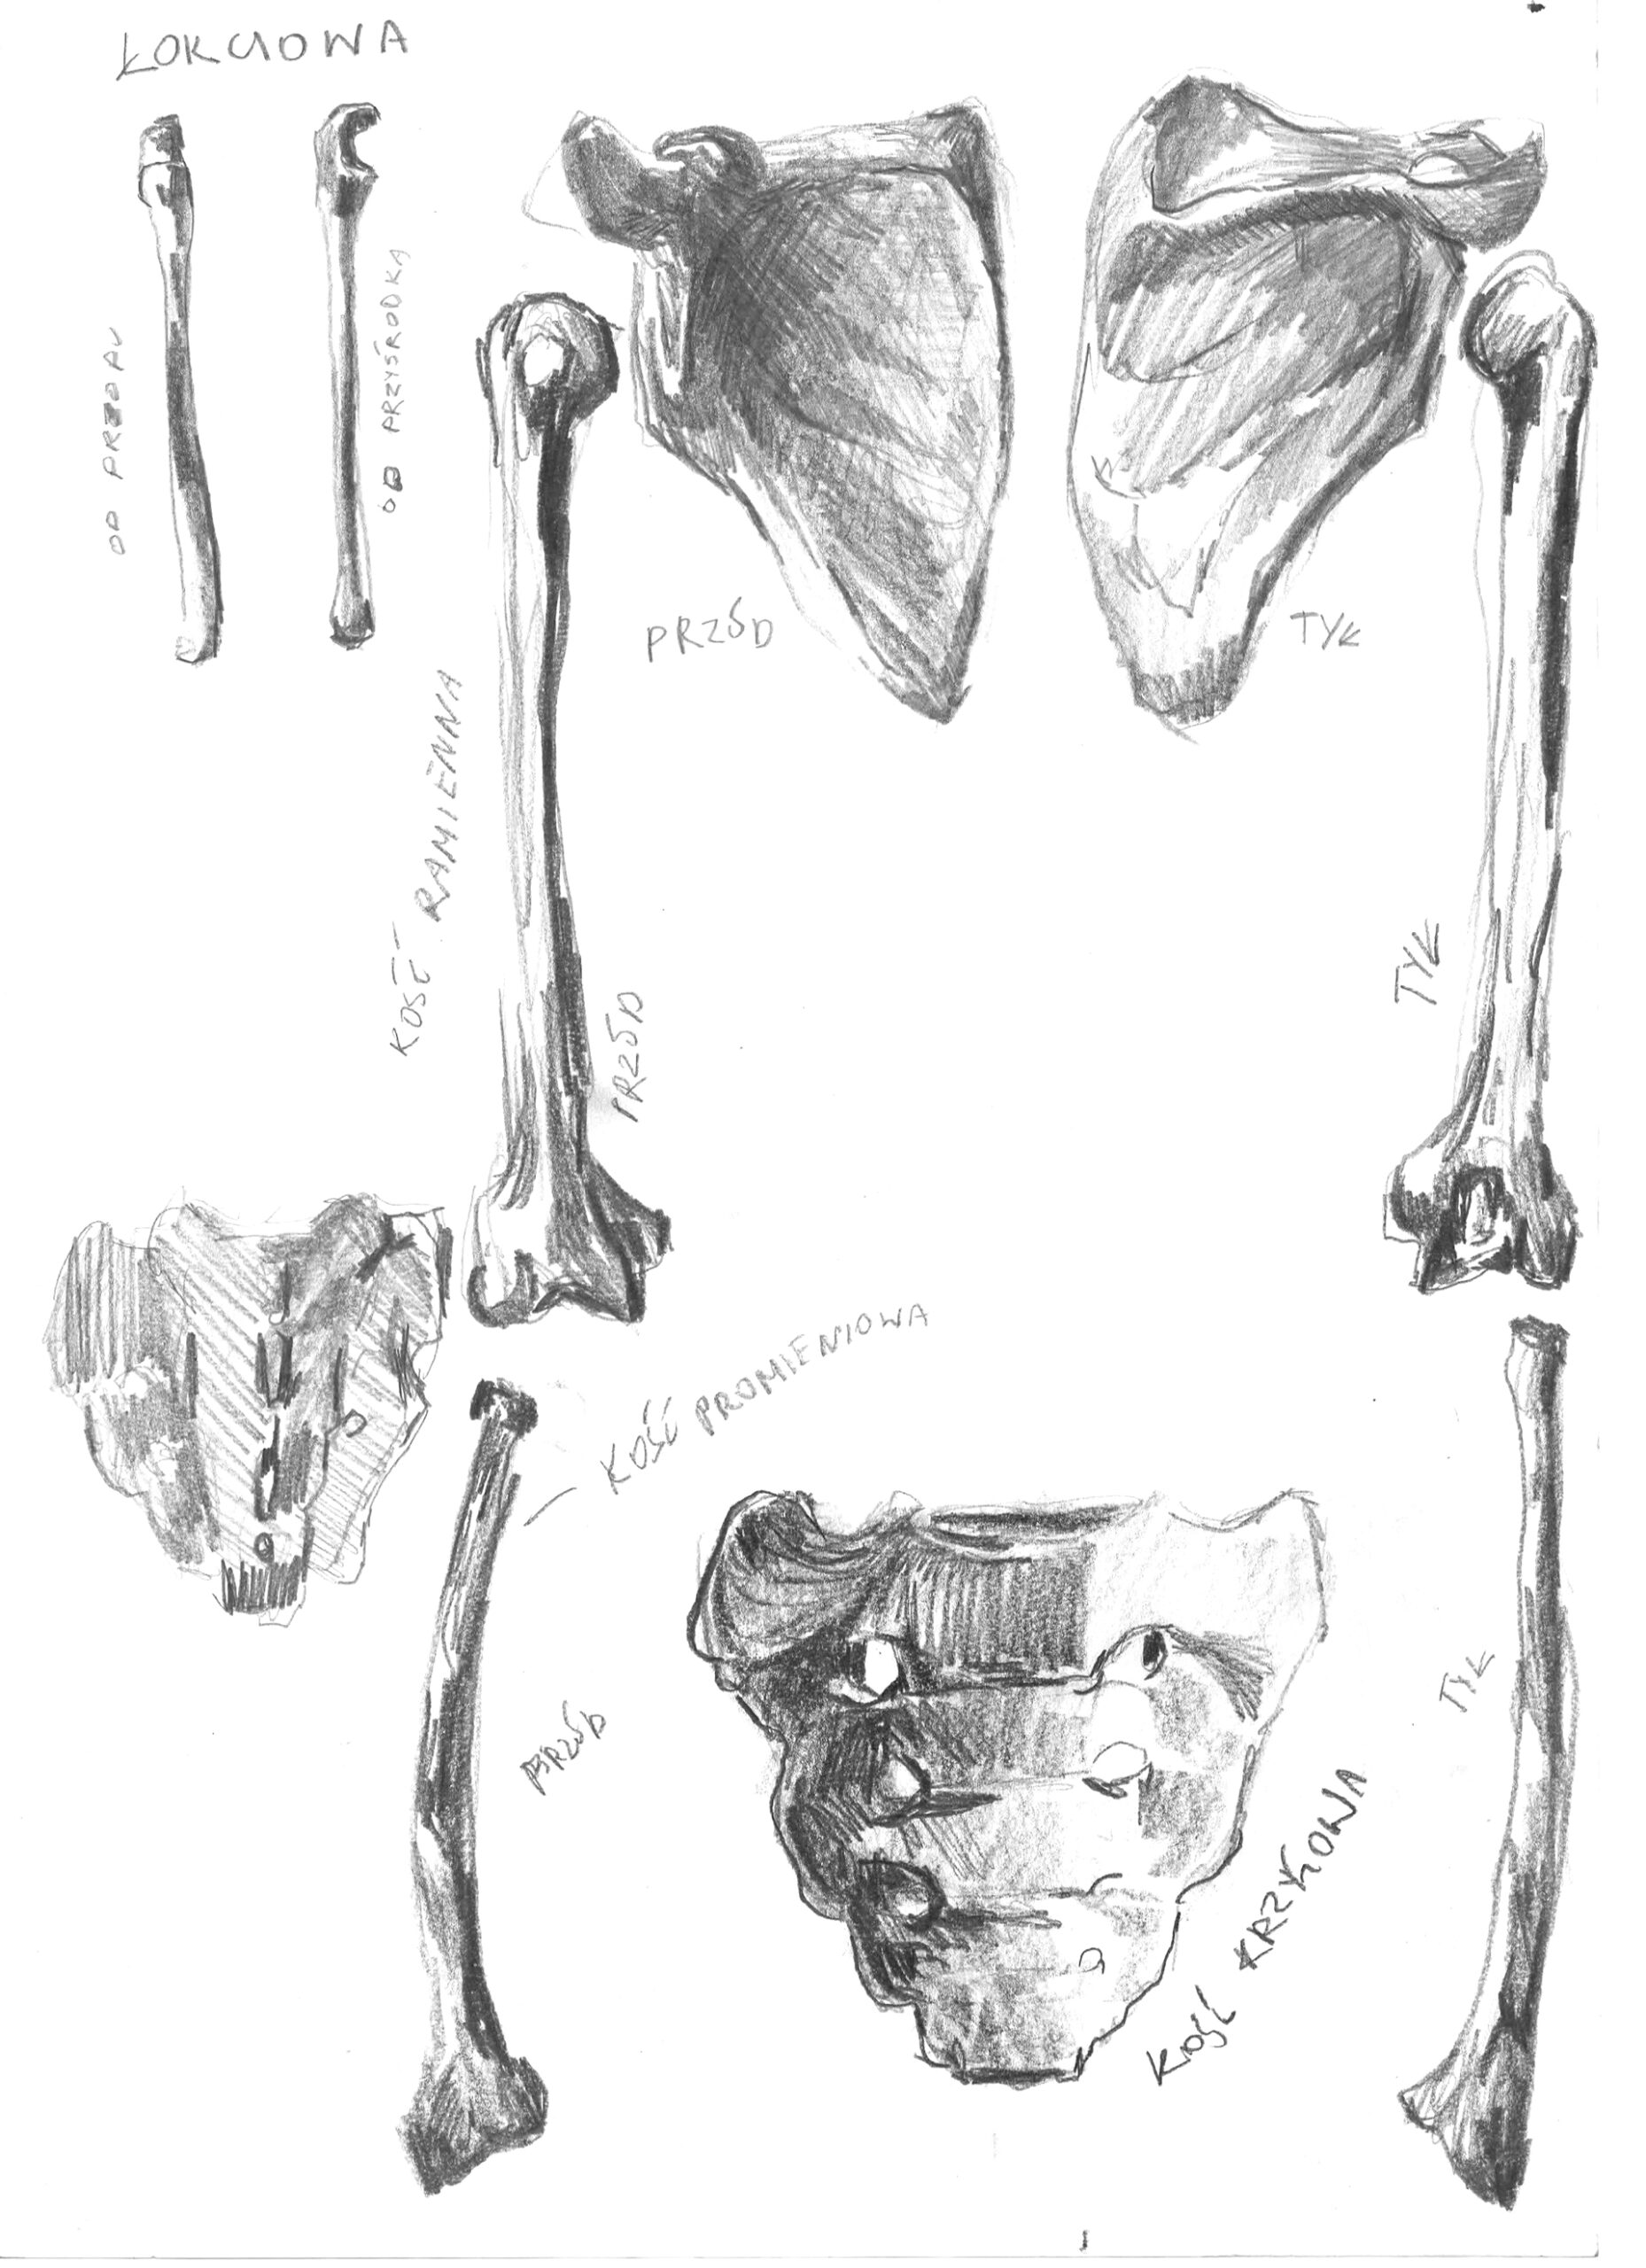 Zdjęcie przedstawia, ekspresyjnie wykonane ołówkiem, studium anatomiczne. Na formacie A5 ukazane są kości ramienna, krzyżowa, promienna i łopatki.